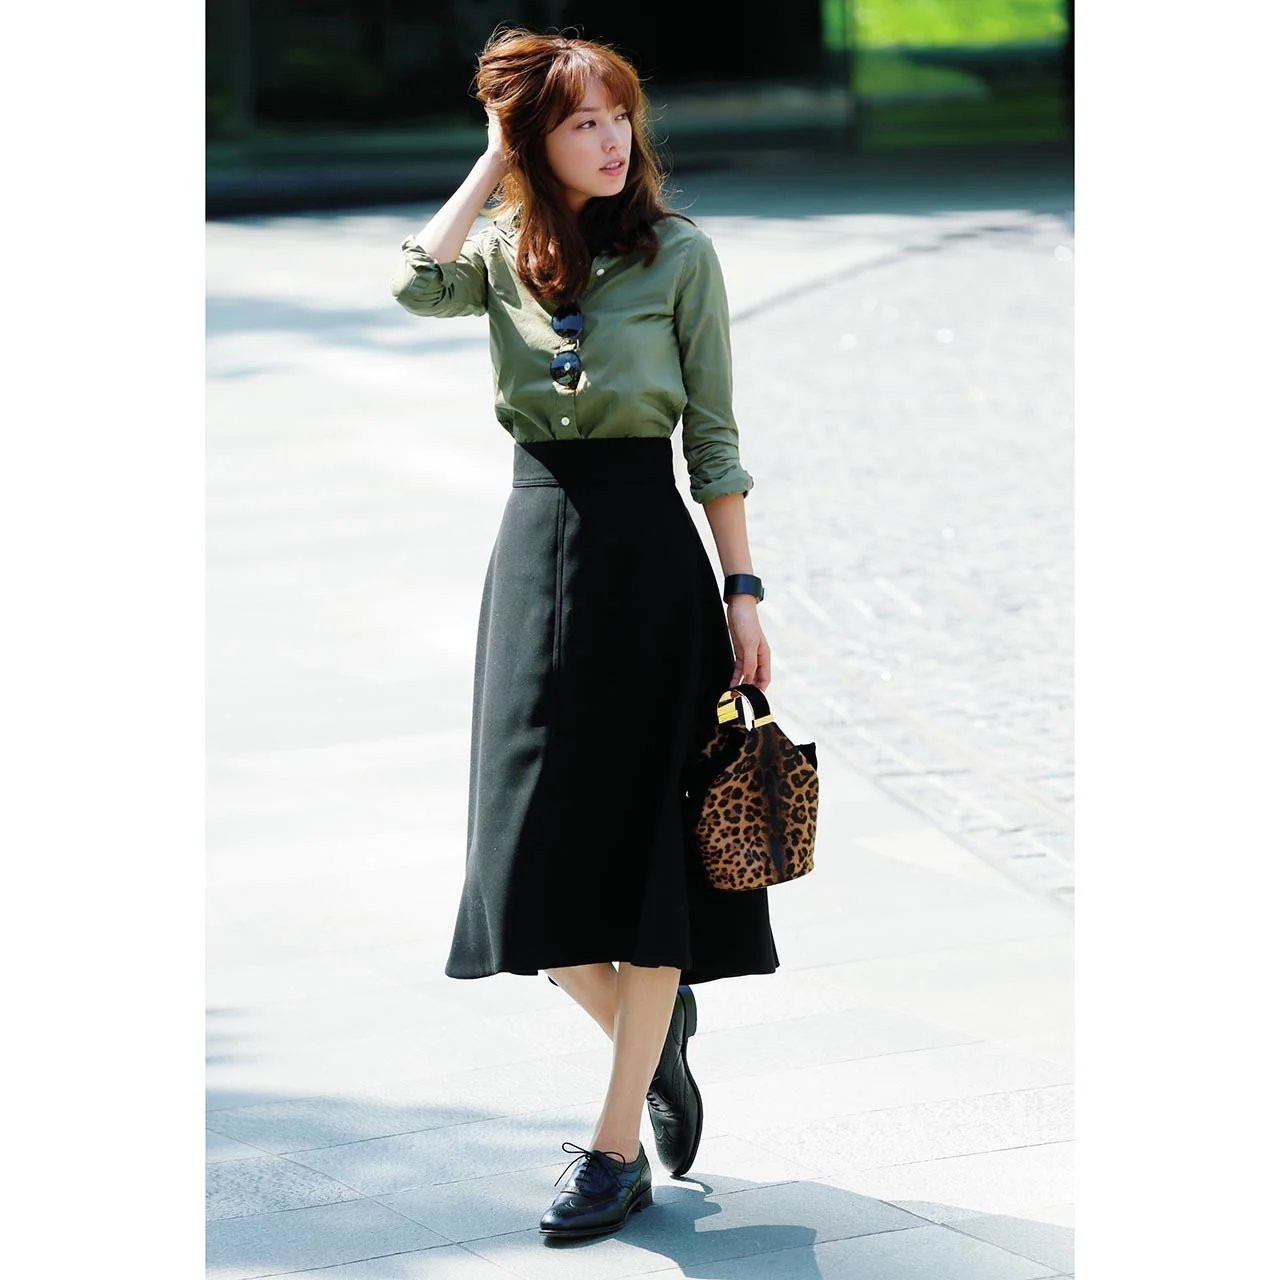 カーキ×黒スカートのファッションコーデ